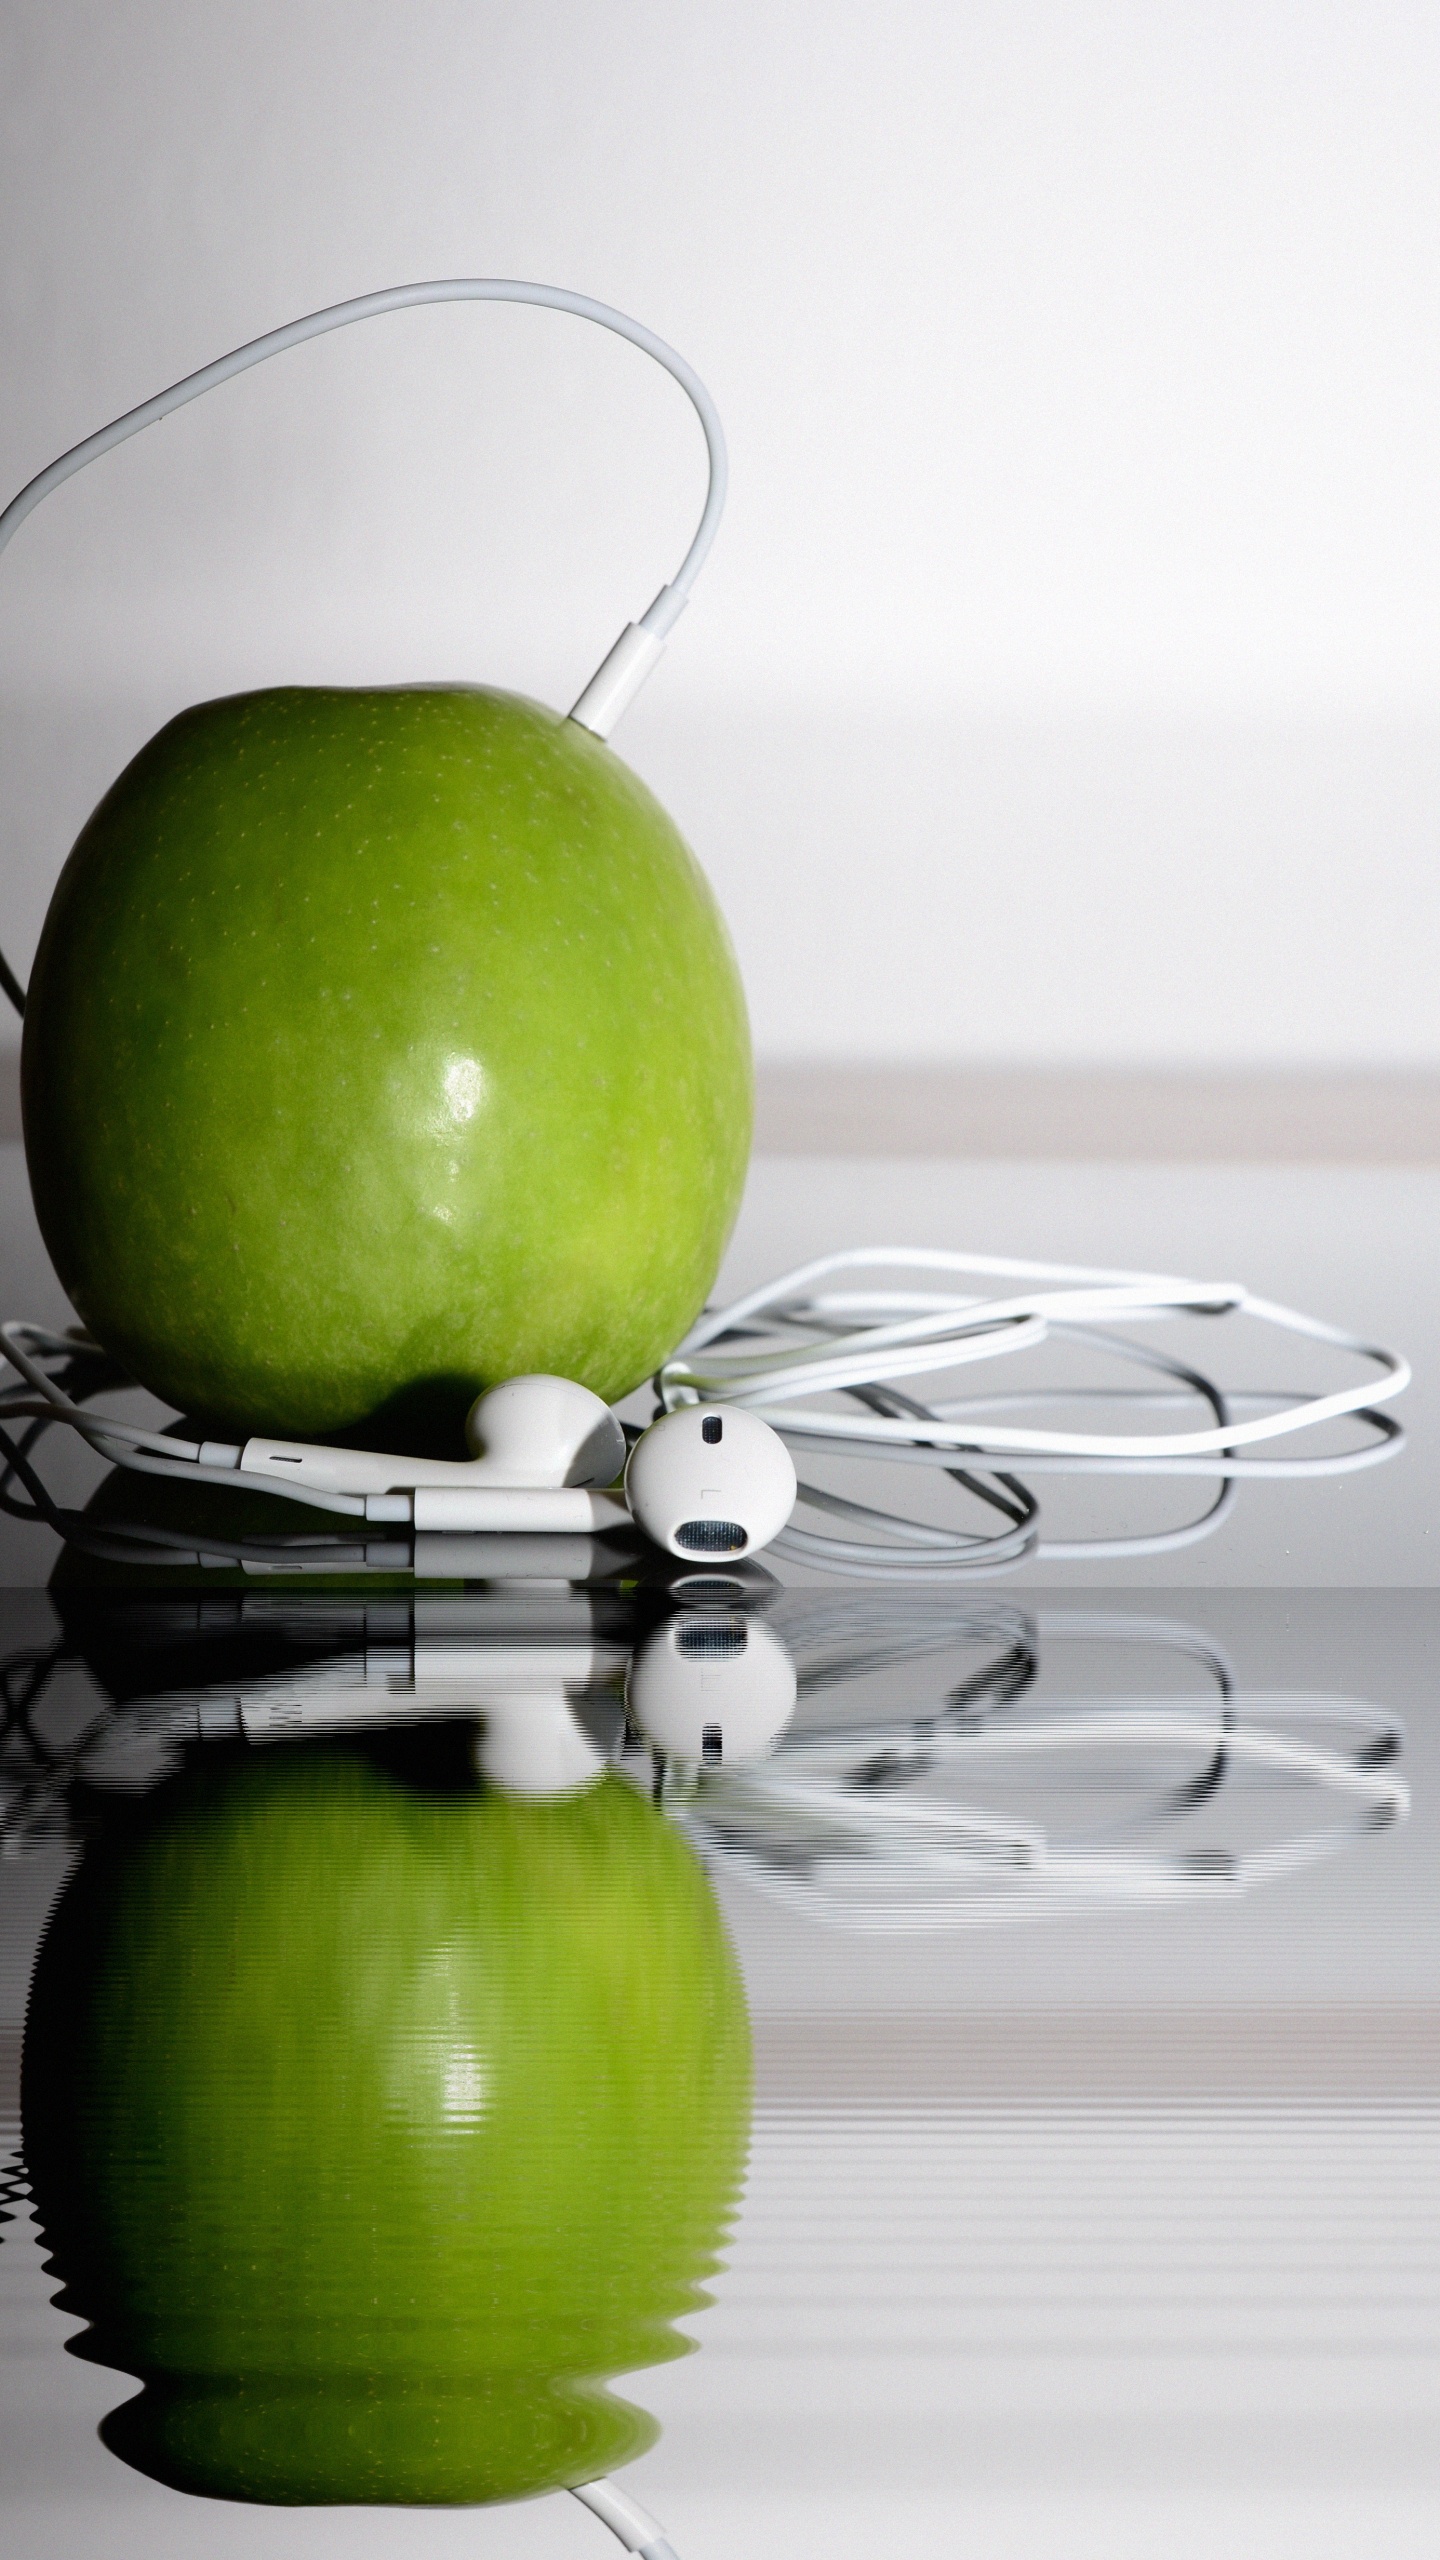 苹果的耳机, 绿色的, 奶奶史密斯, Apple, 食品 壁纸 1440x2560 允许